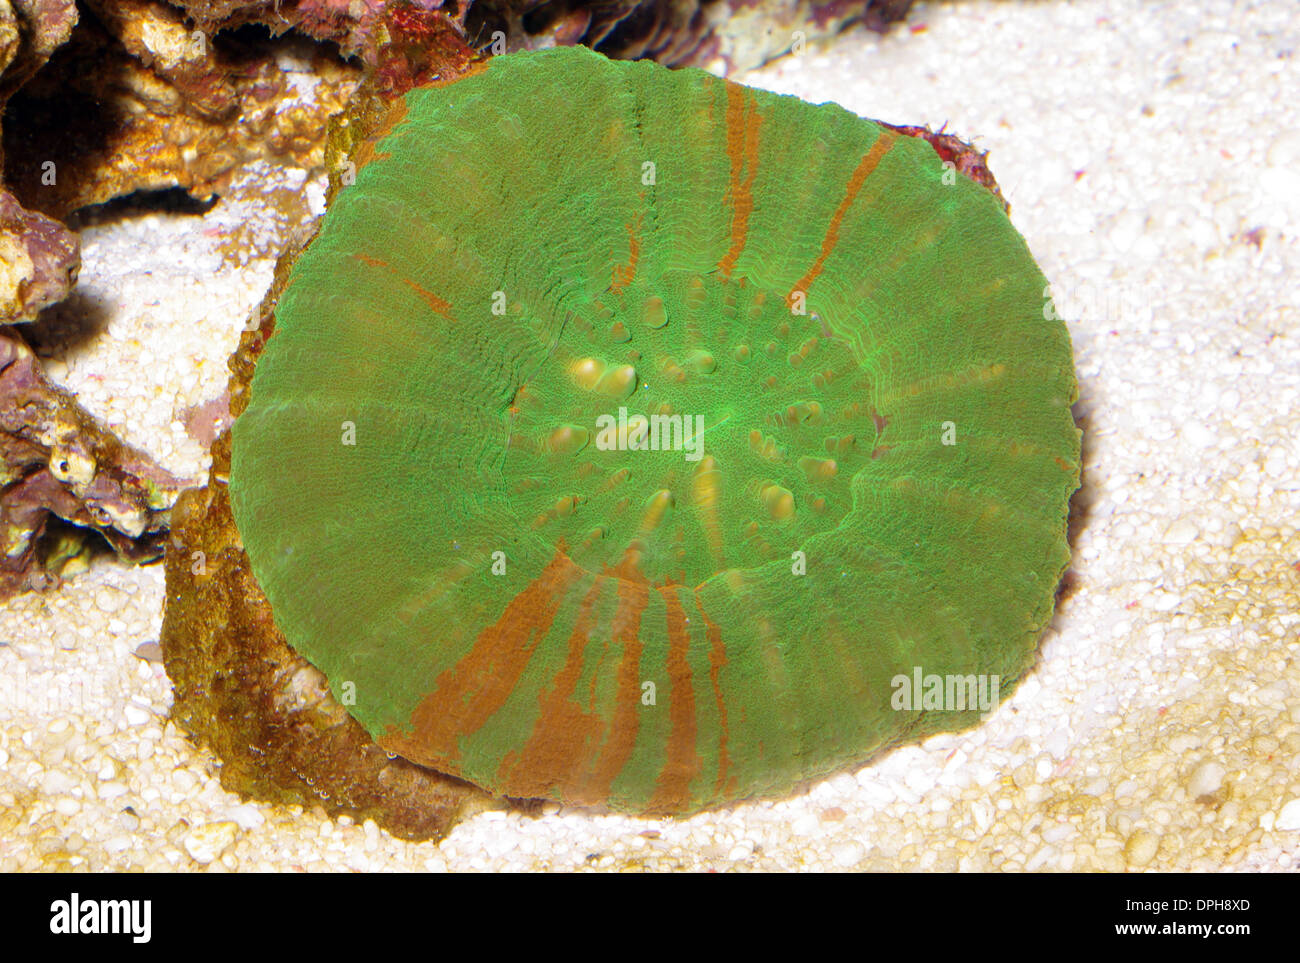 Button coral (Scolymia australis) Stock Photo